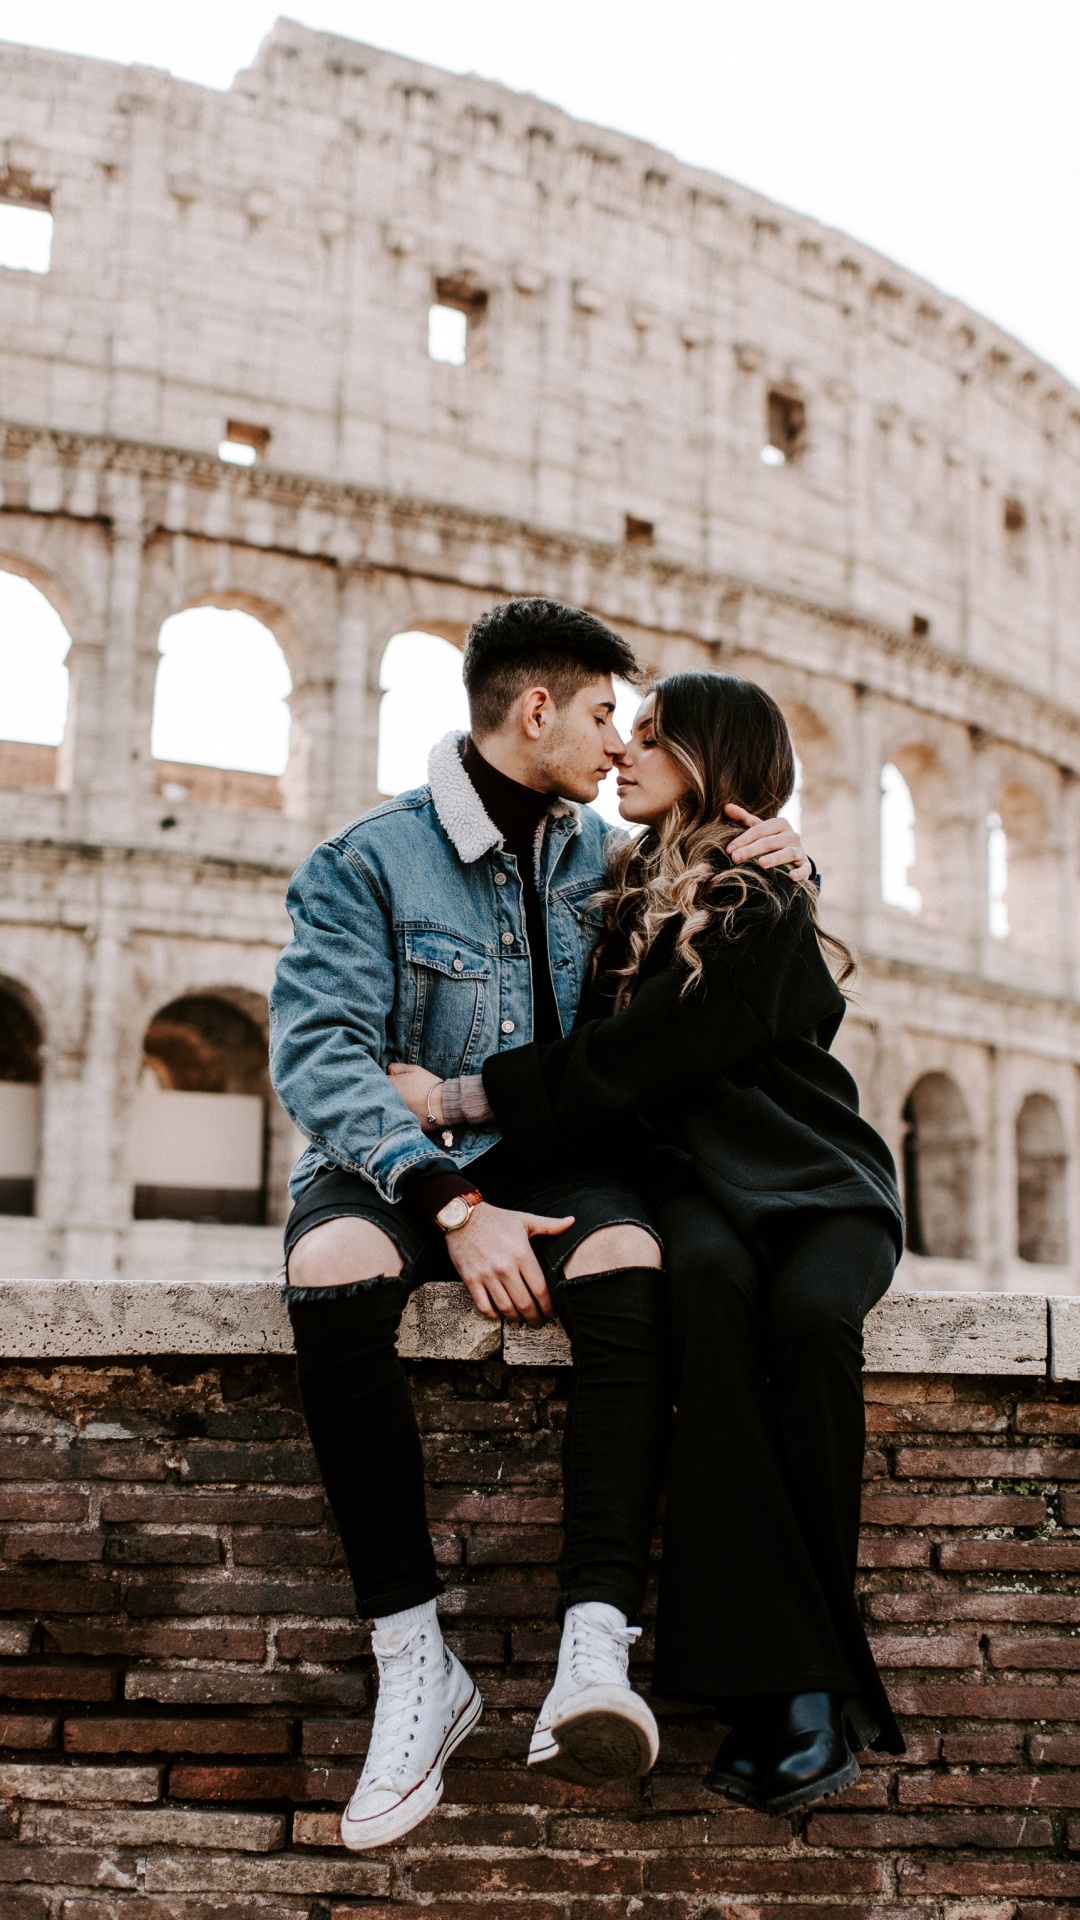 罗马竞技场, 浪漫, 蜜月, 相互作用, 爱情 壁纸 1080x1920 允许